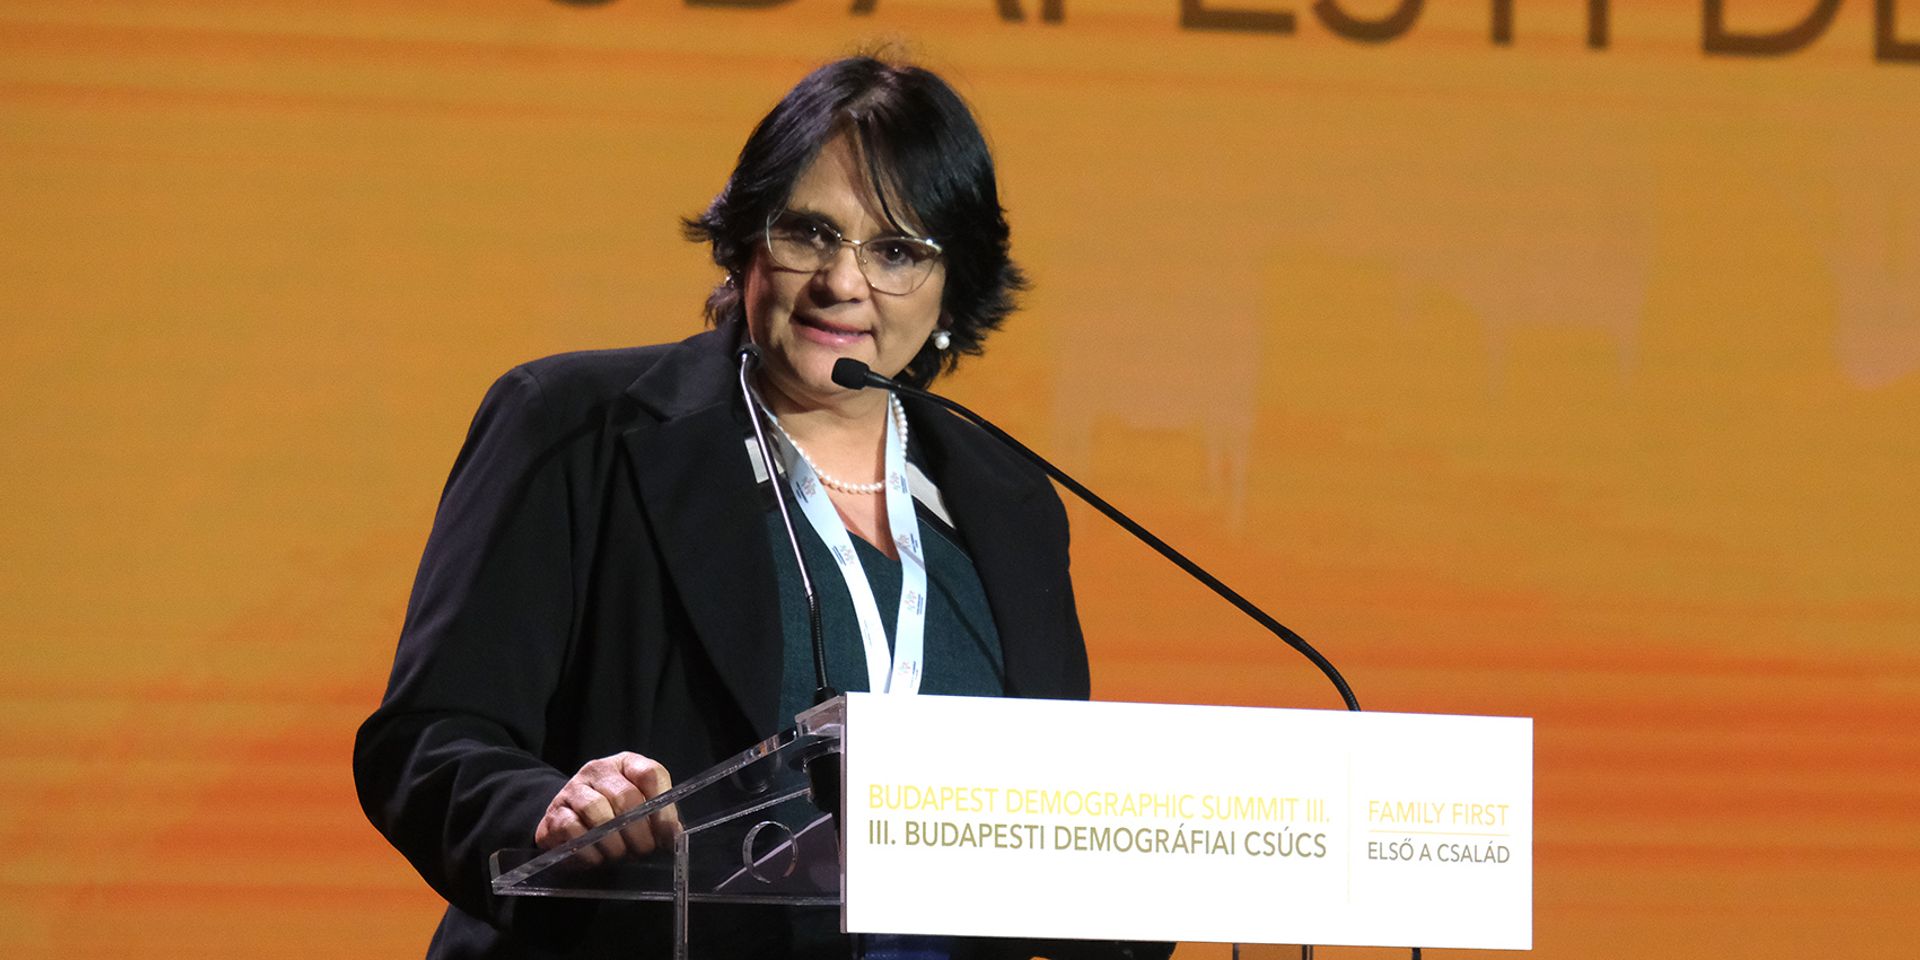 Damares Regina Alves: A kormány nem a családok életébe akar beavatkozni, hanem segíteni szeretné őket